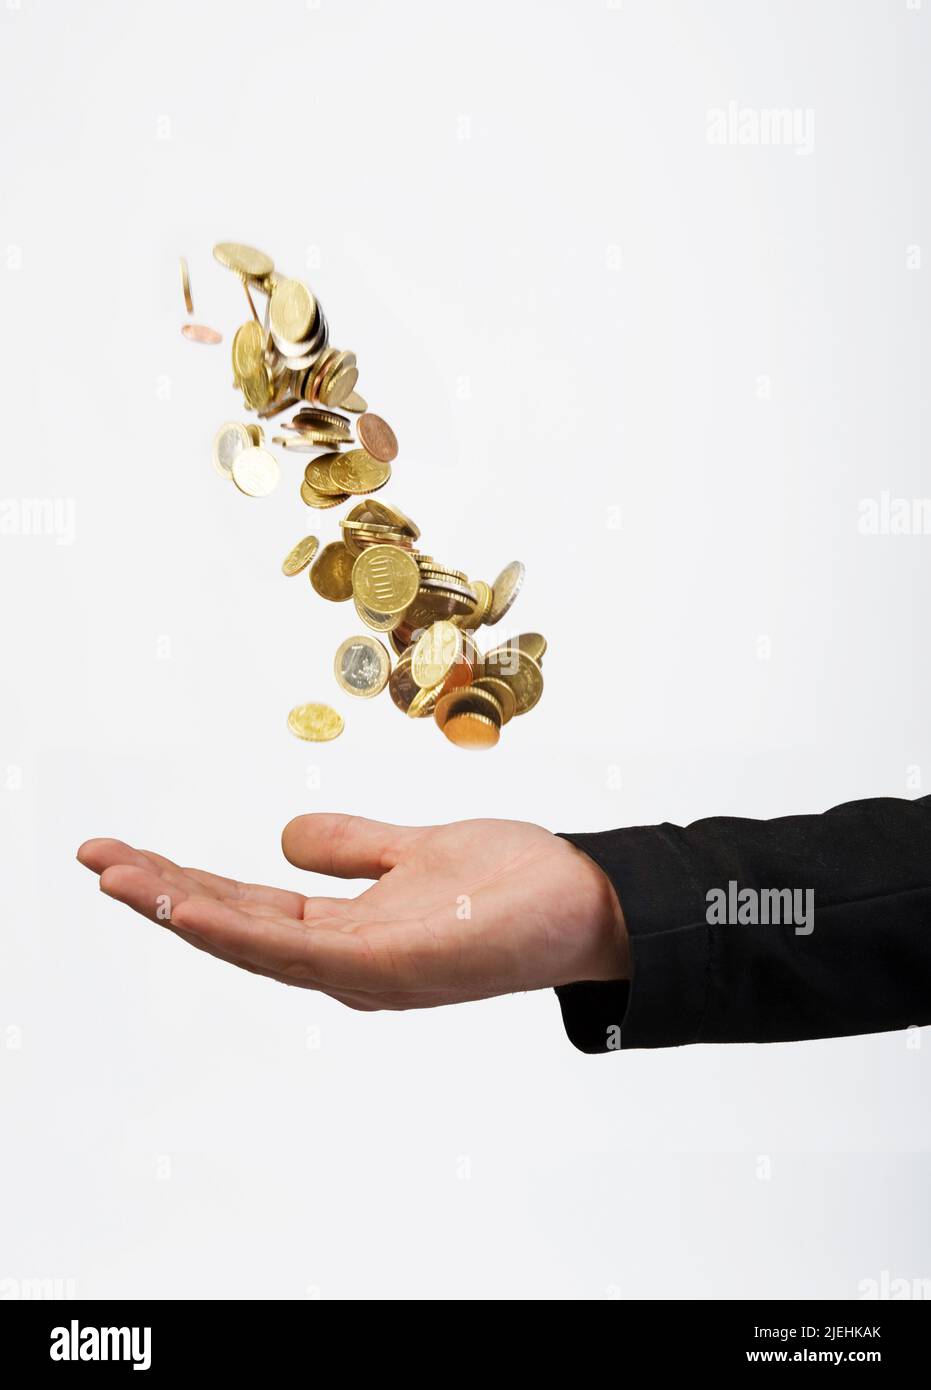 Mann wirft Geldmünzen in die Luft, fängt diese dann auf. Vermögensberater, Finanzjongleur, Stock Photo